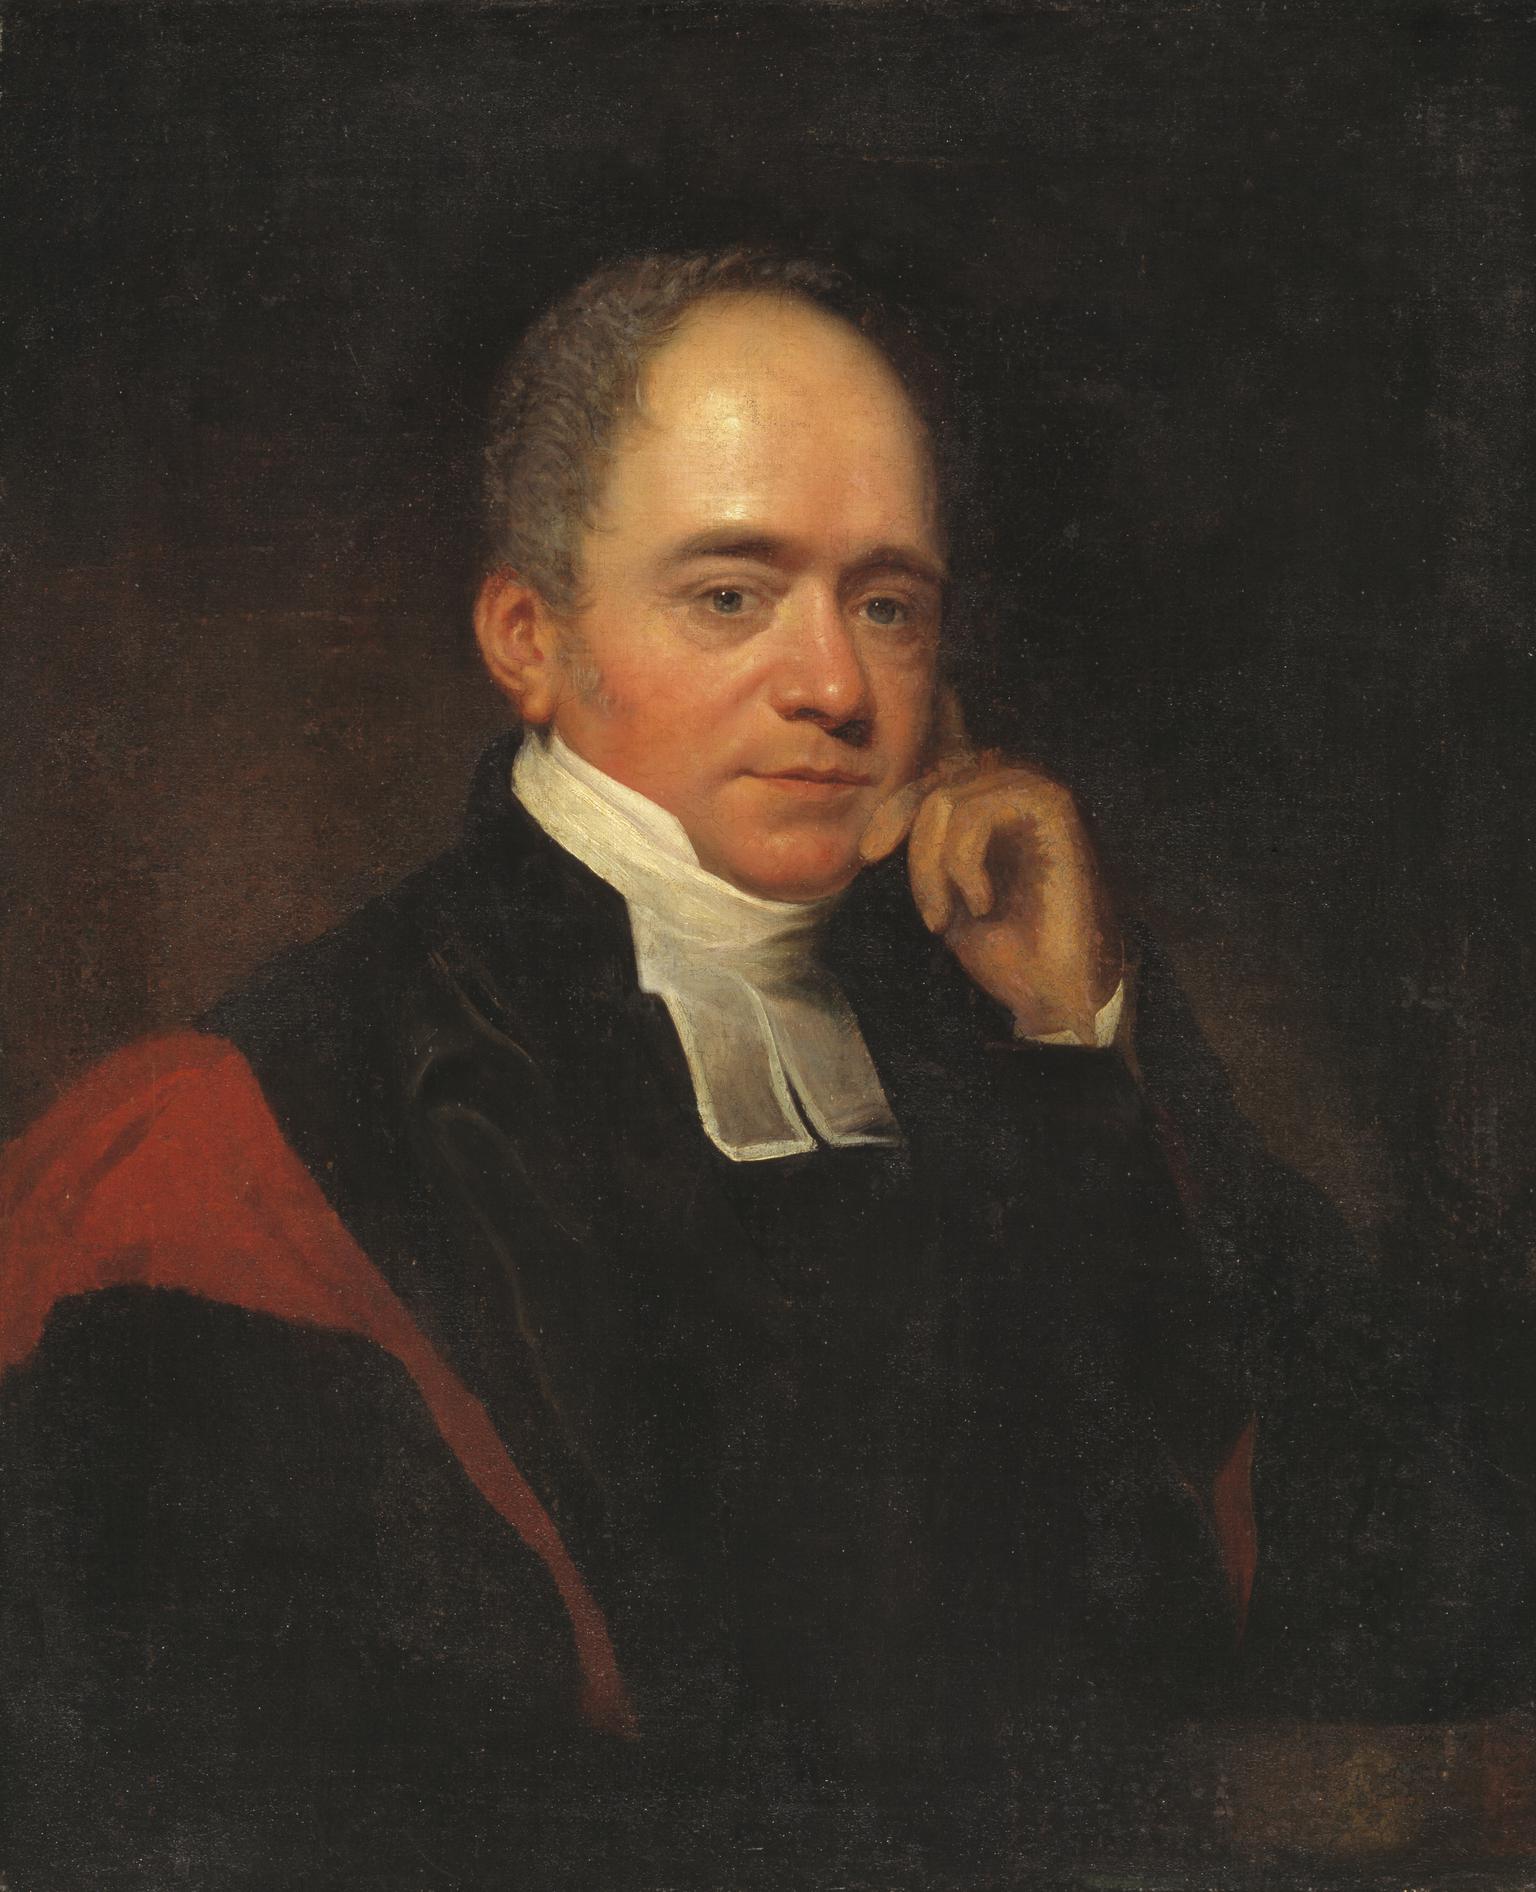 Edward Copleston, Bishop of Llandaff (1776-1849)